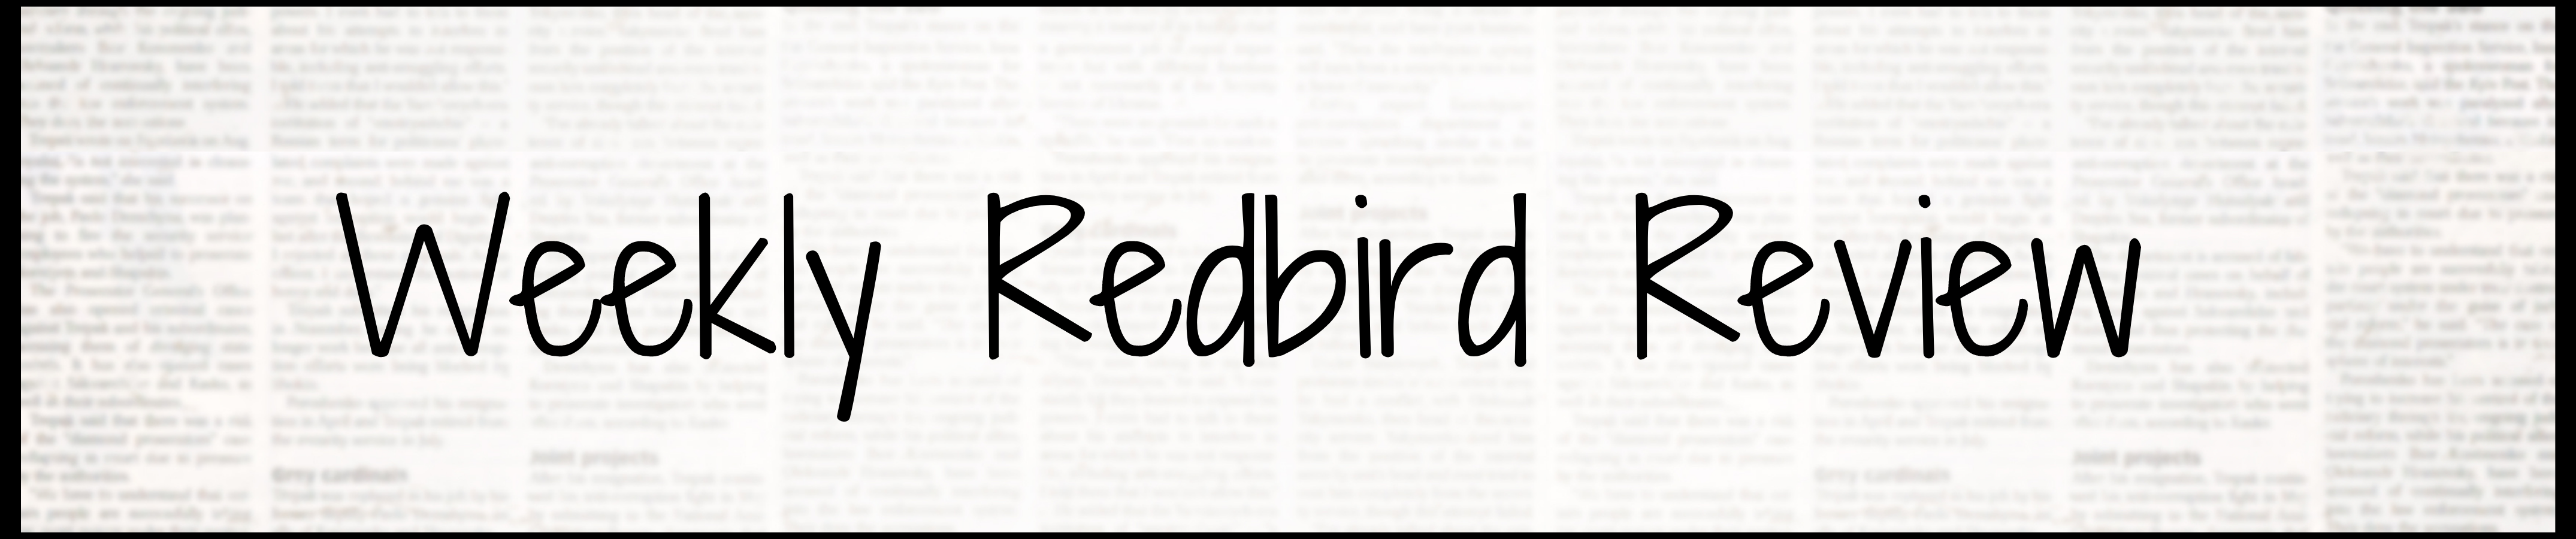 redbird review